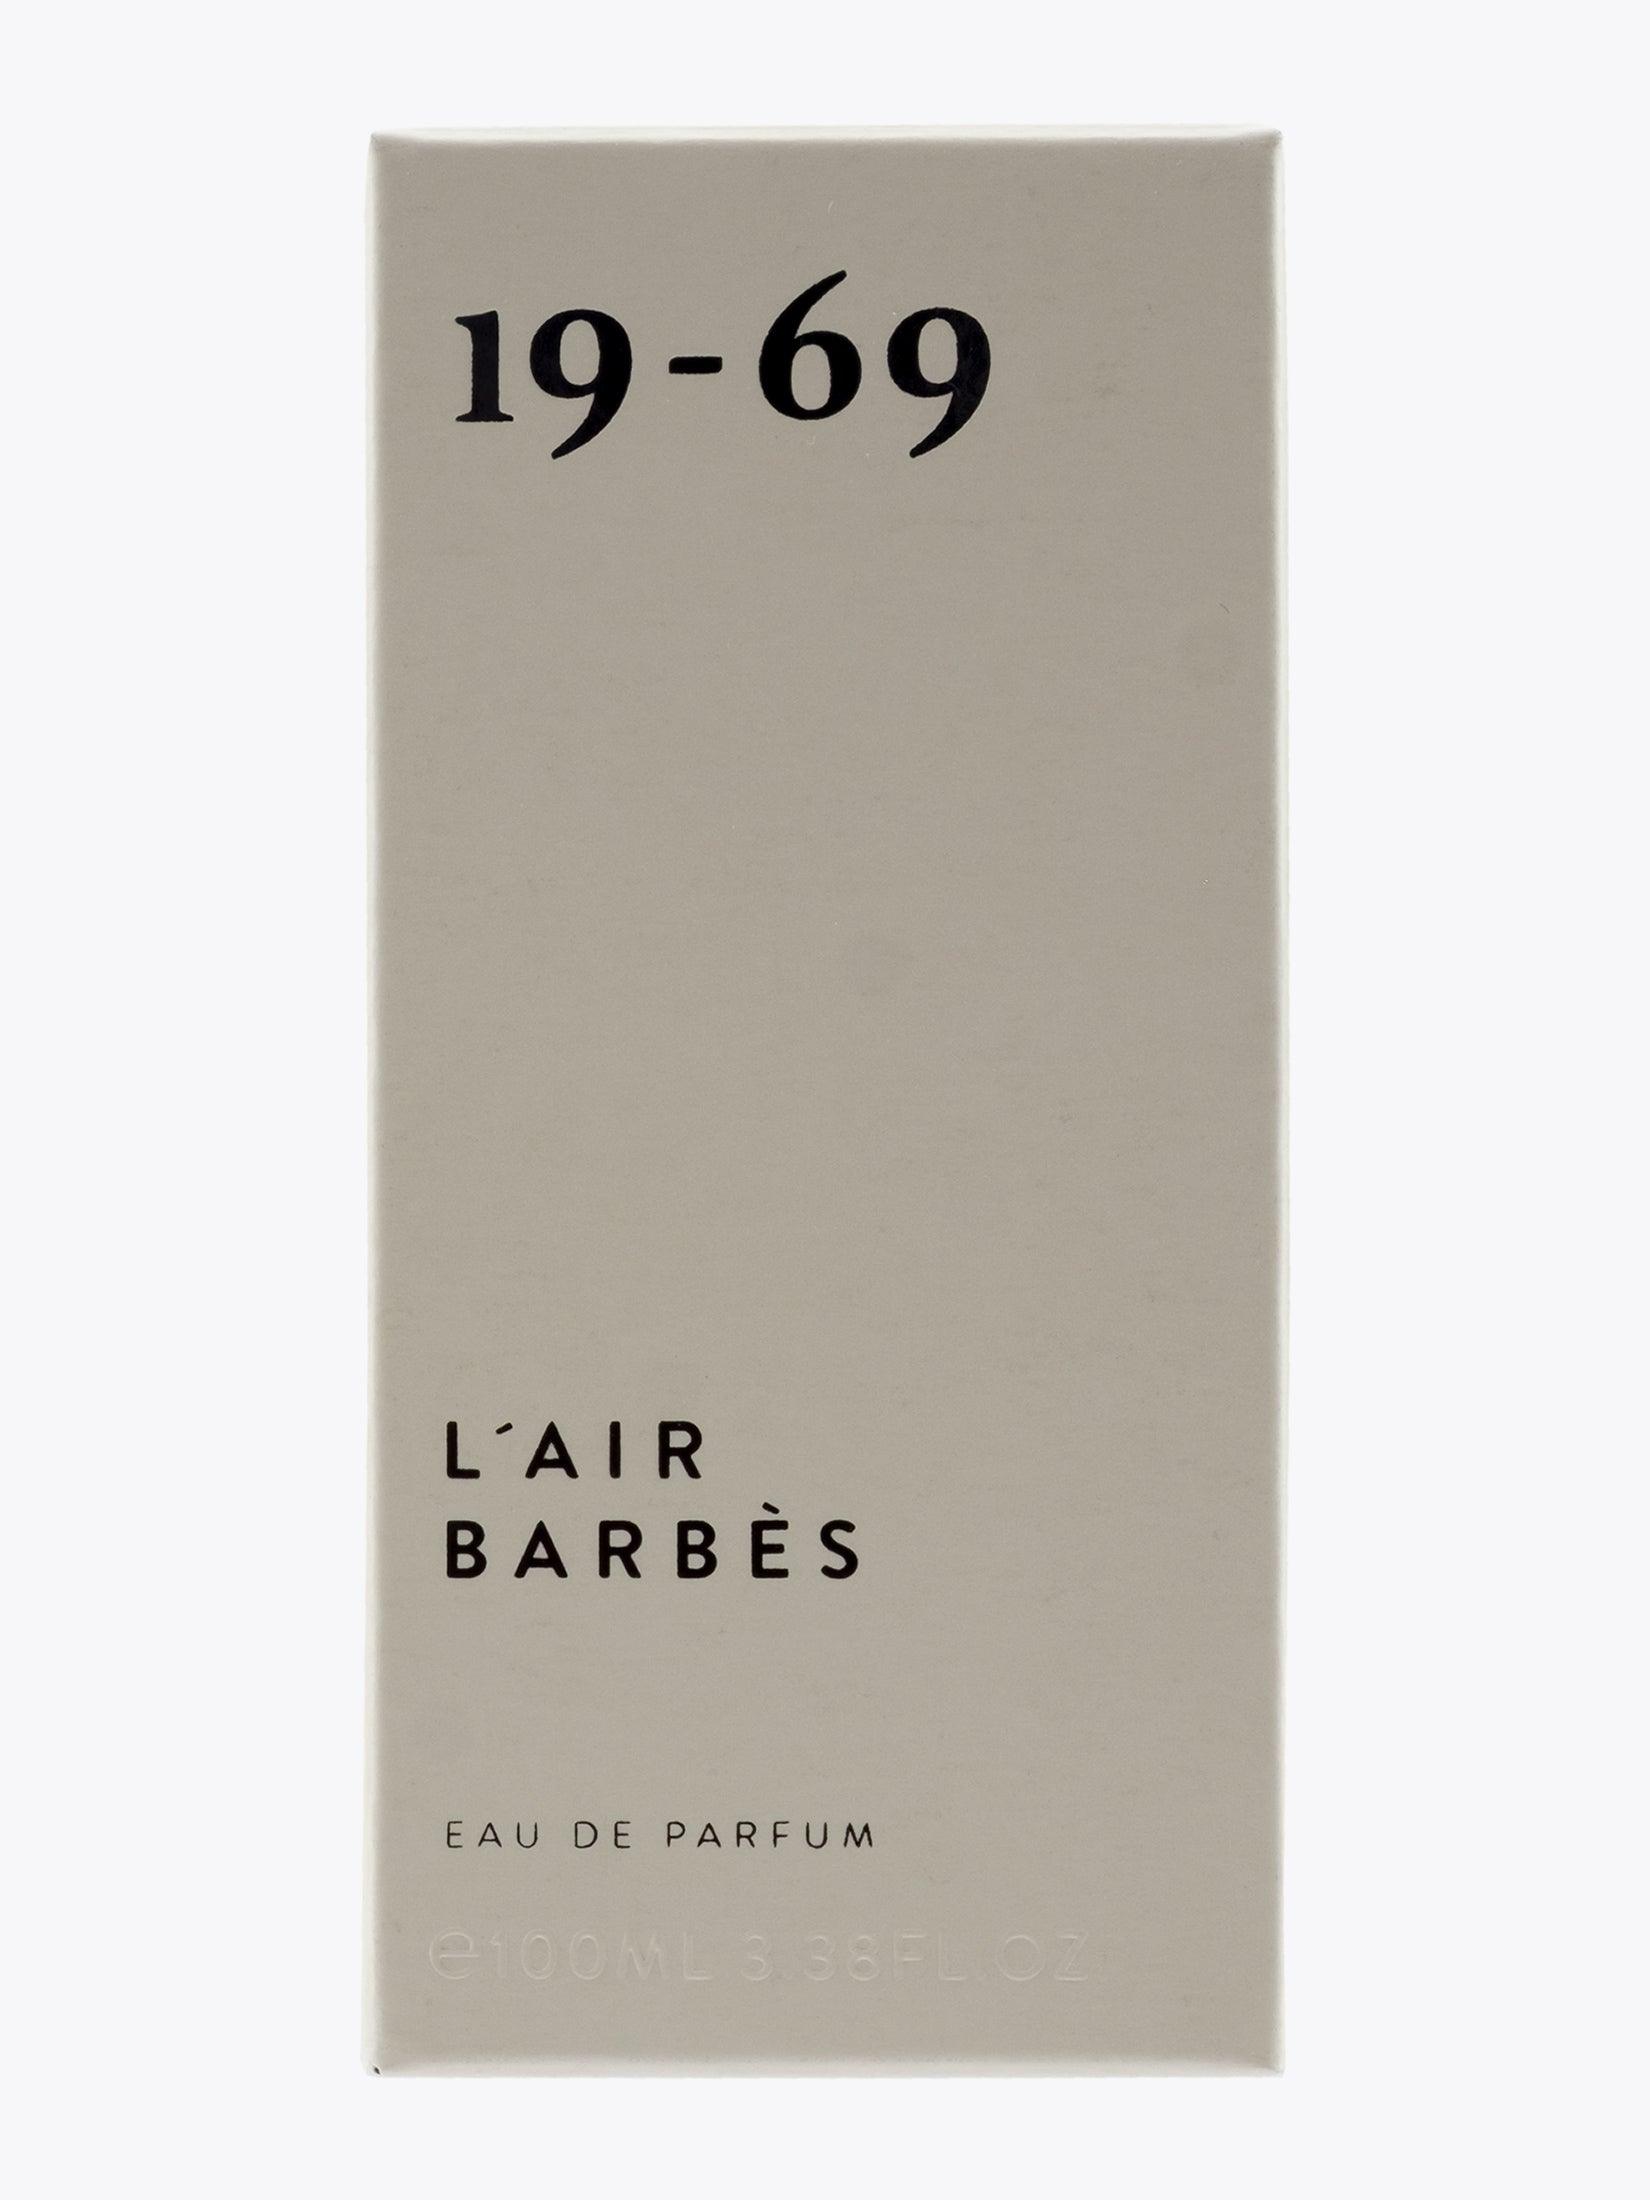 19-69 L'Air Barbès Eau de Parfum 100ml